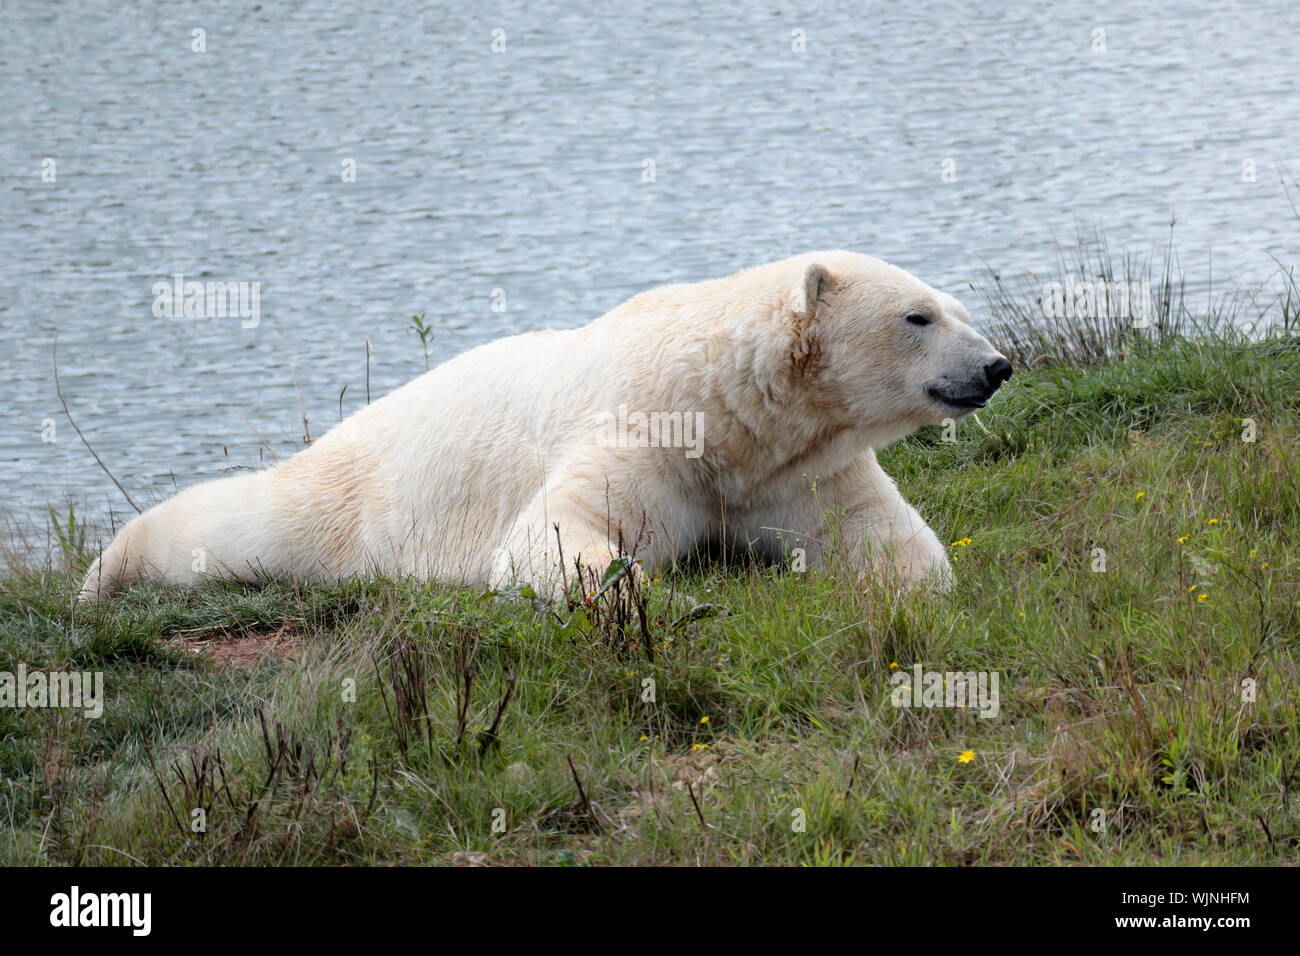 Un oso polar (Ursus maritimus - U. maritimus descansando sobre el césped de banco de un cuerpo de agua Foto de stock